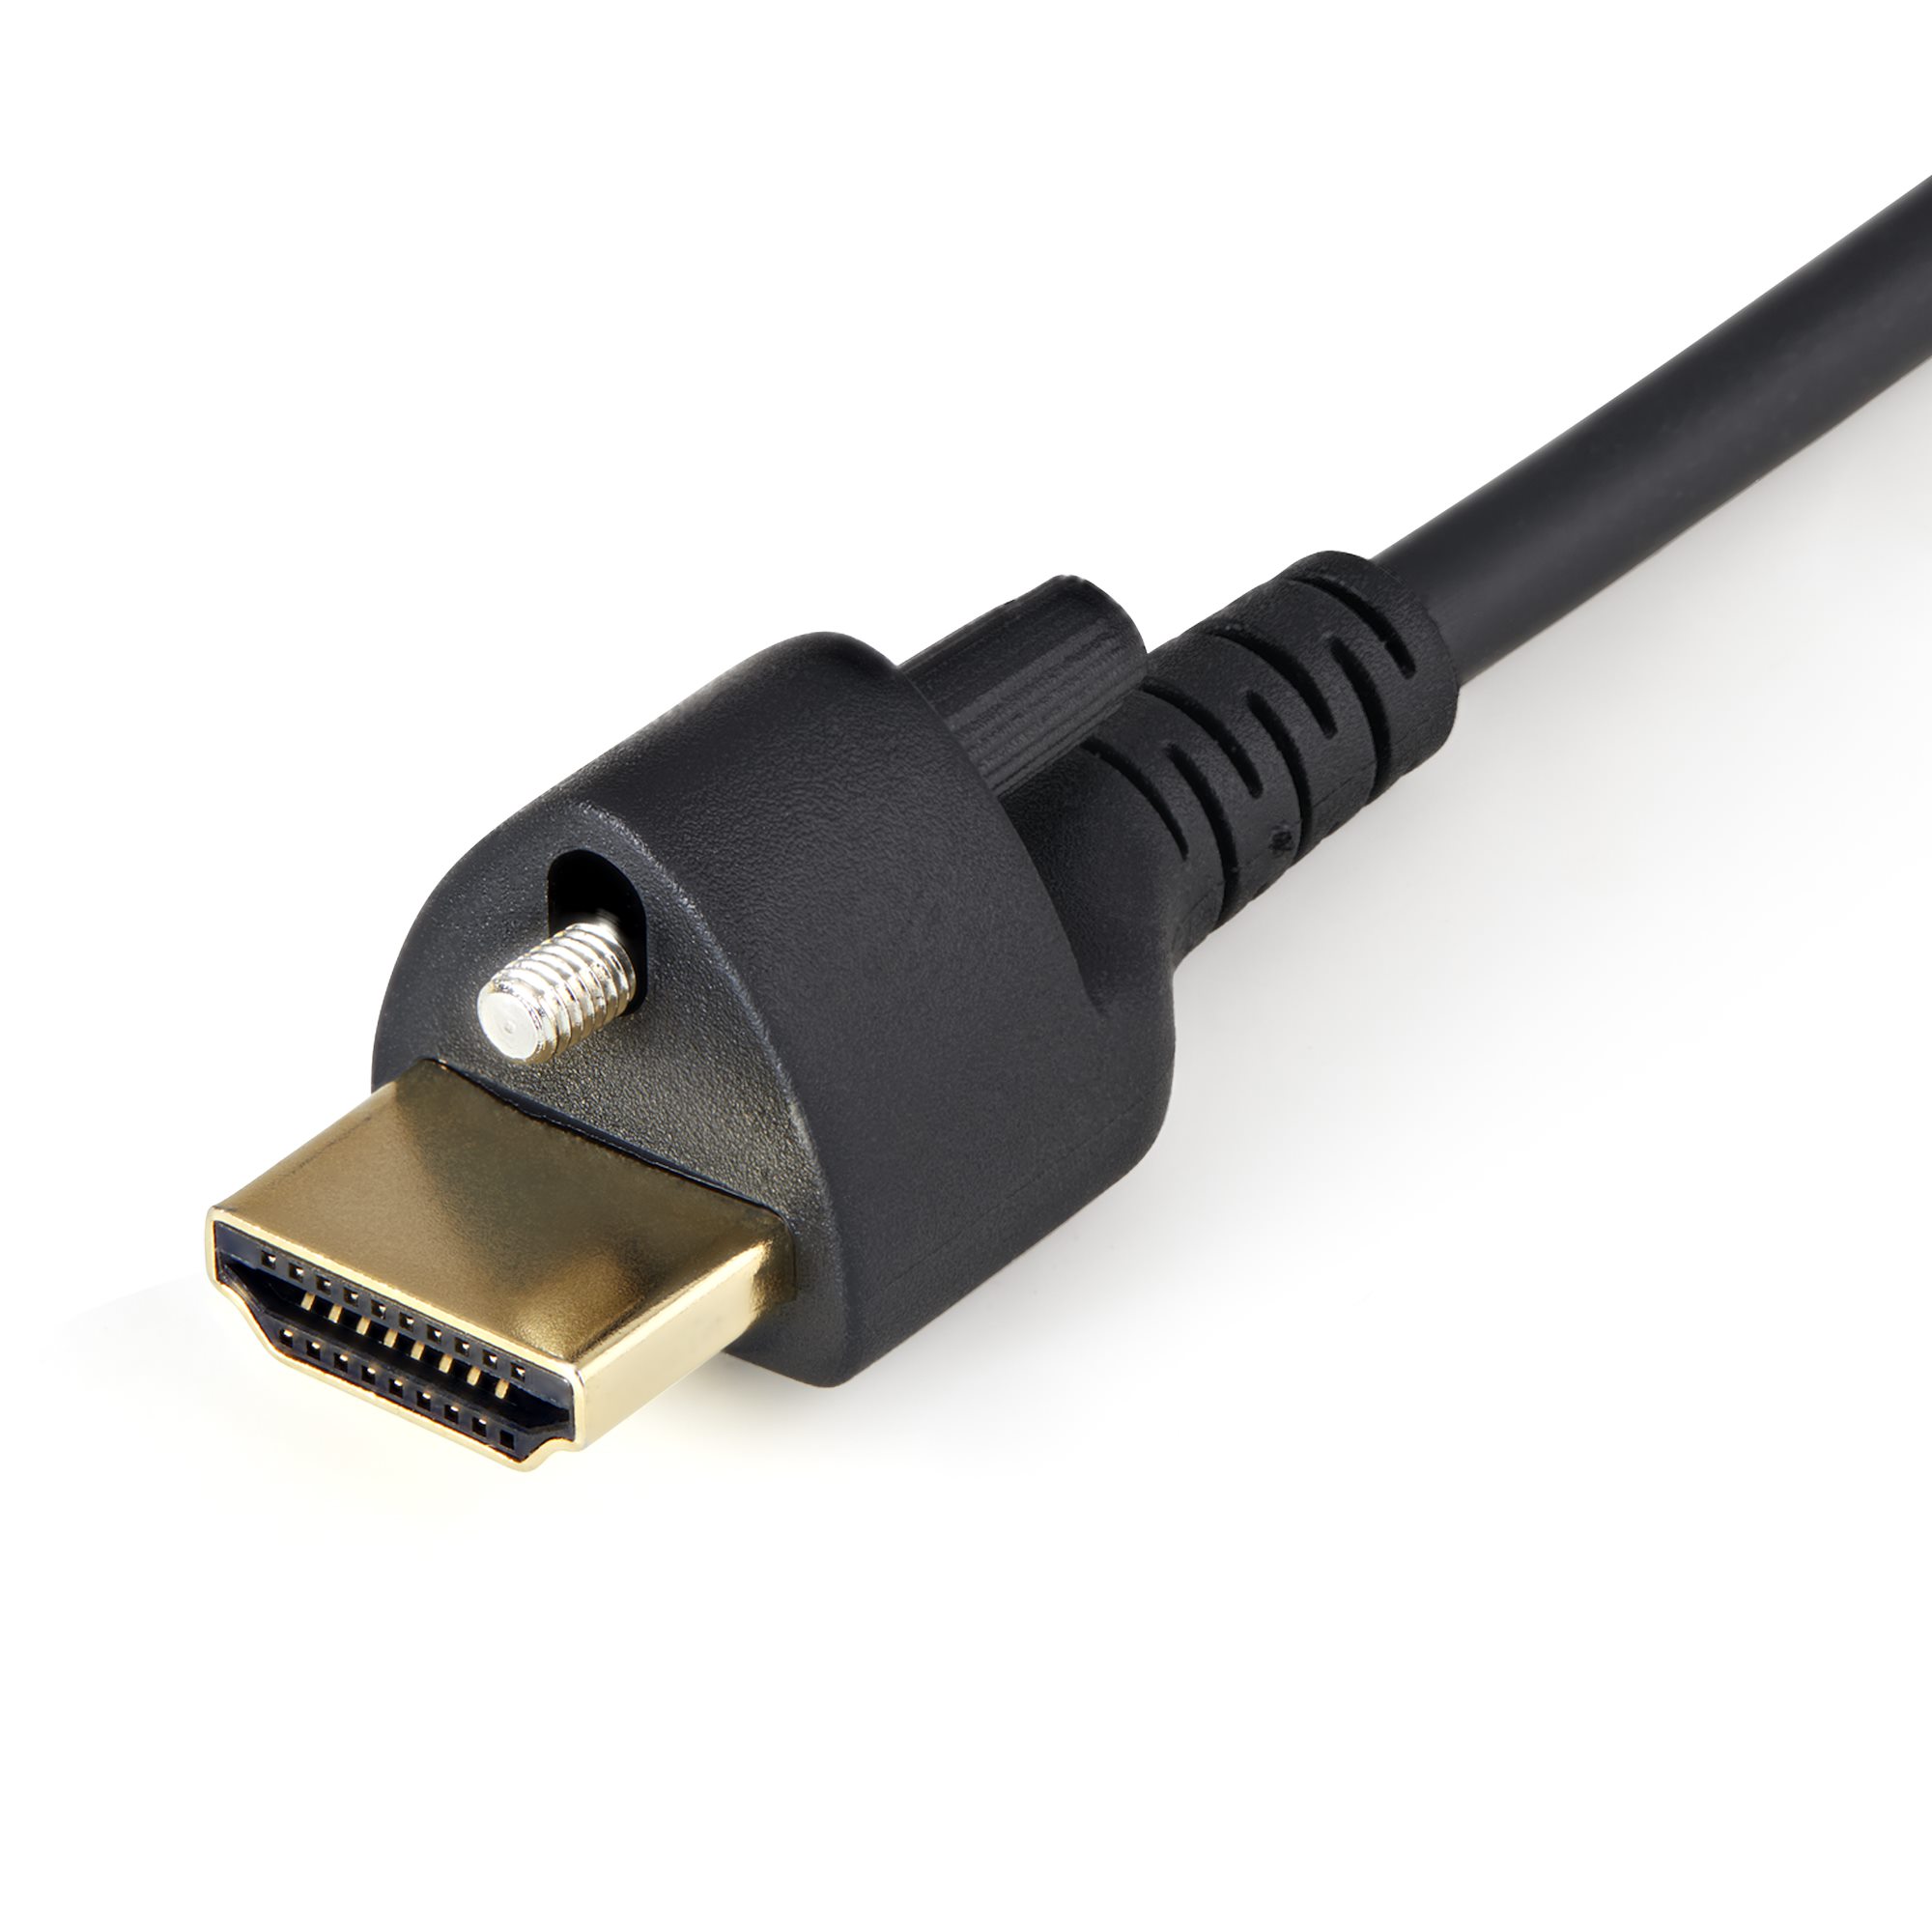 Câble HDMI 2.0 premium de 1 m (4K 60Hz) - Câbles et adaptateurs DVI/HDMI